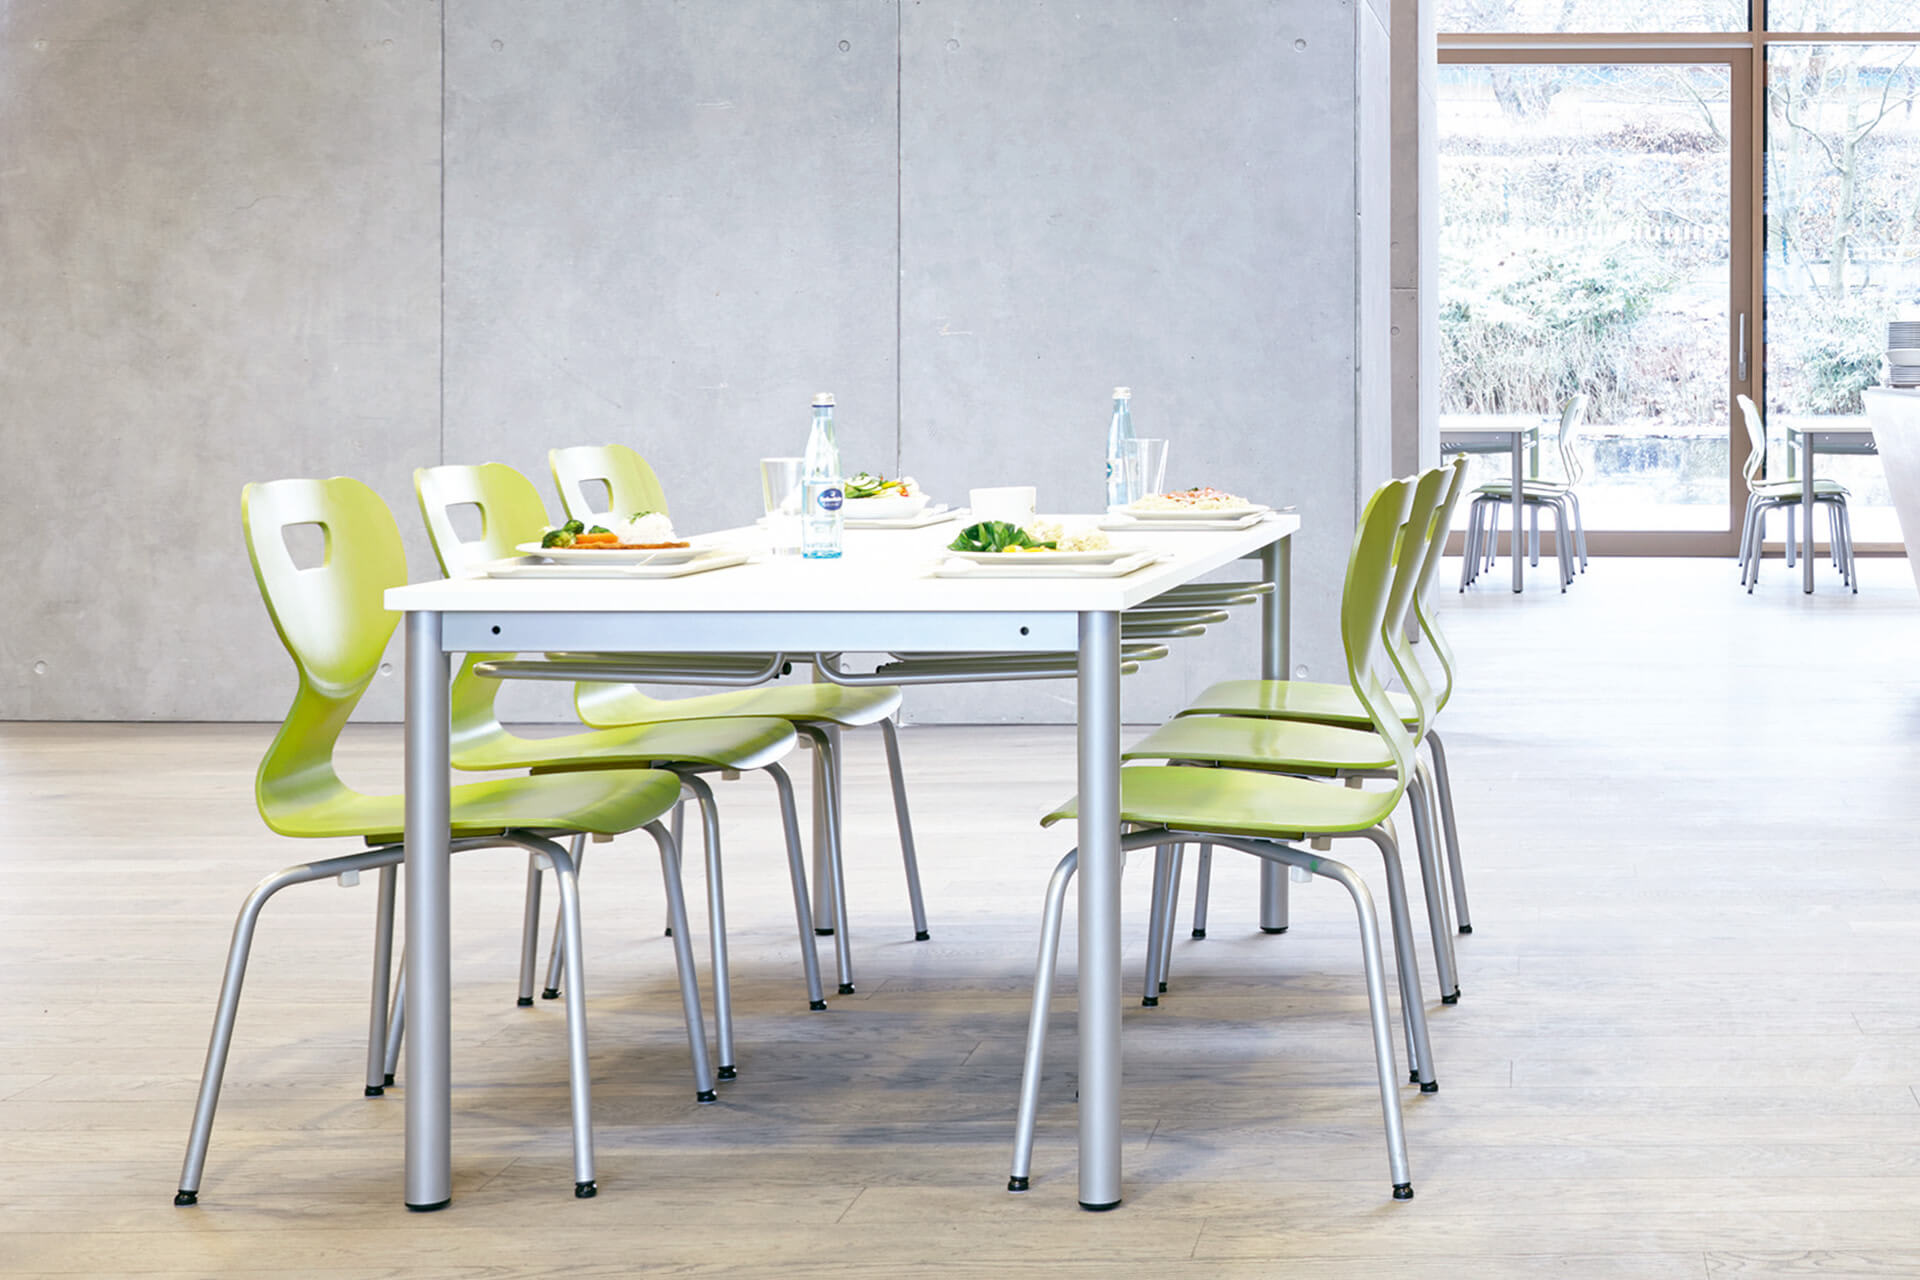 Schulcafeteria | Gedeckter Tisch mit Tellern, Gläsern und Flaschen, an dem sechs Stühle mit grünem Sitzteil, steht vor einer Betonwand